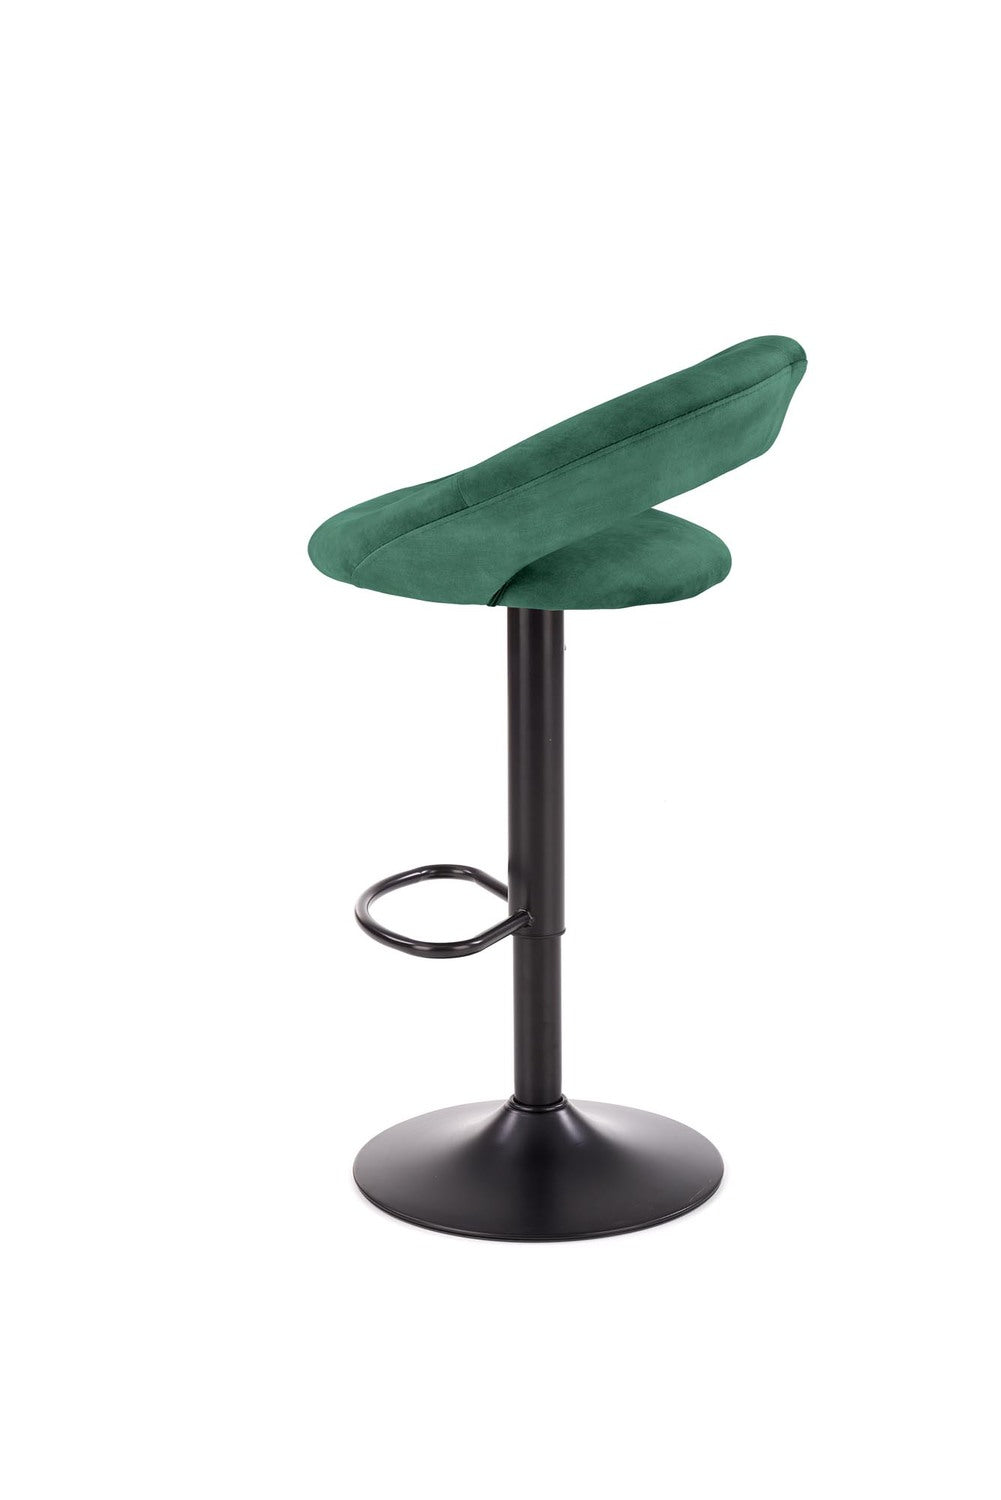 JY krēsls tumši zaļs 78-100/53/48/62-84 cm - N1 Home